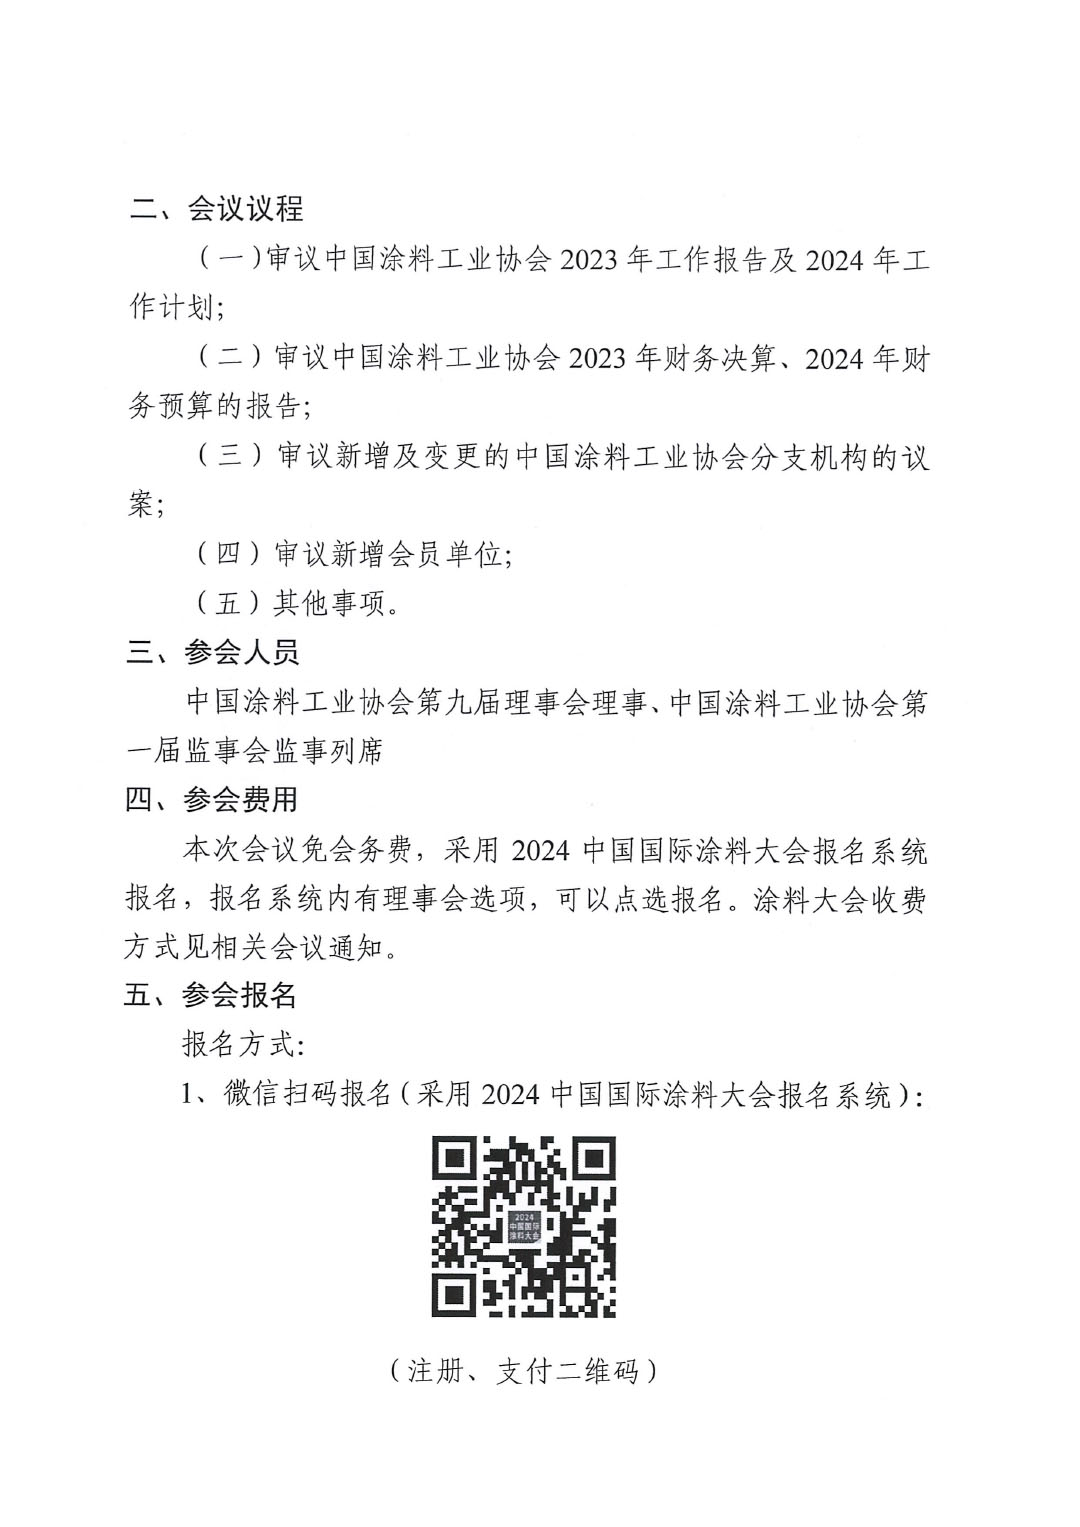 關于召開中國涂料工業協會第九屆三次理事會的通知-2